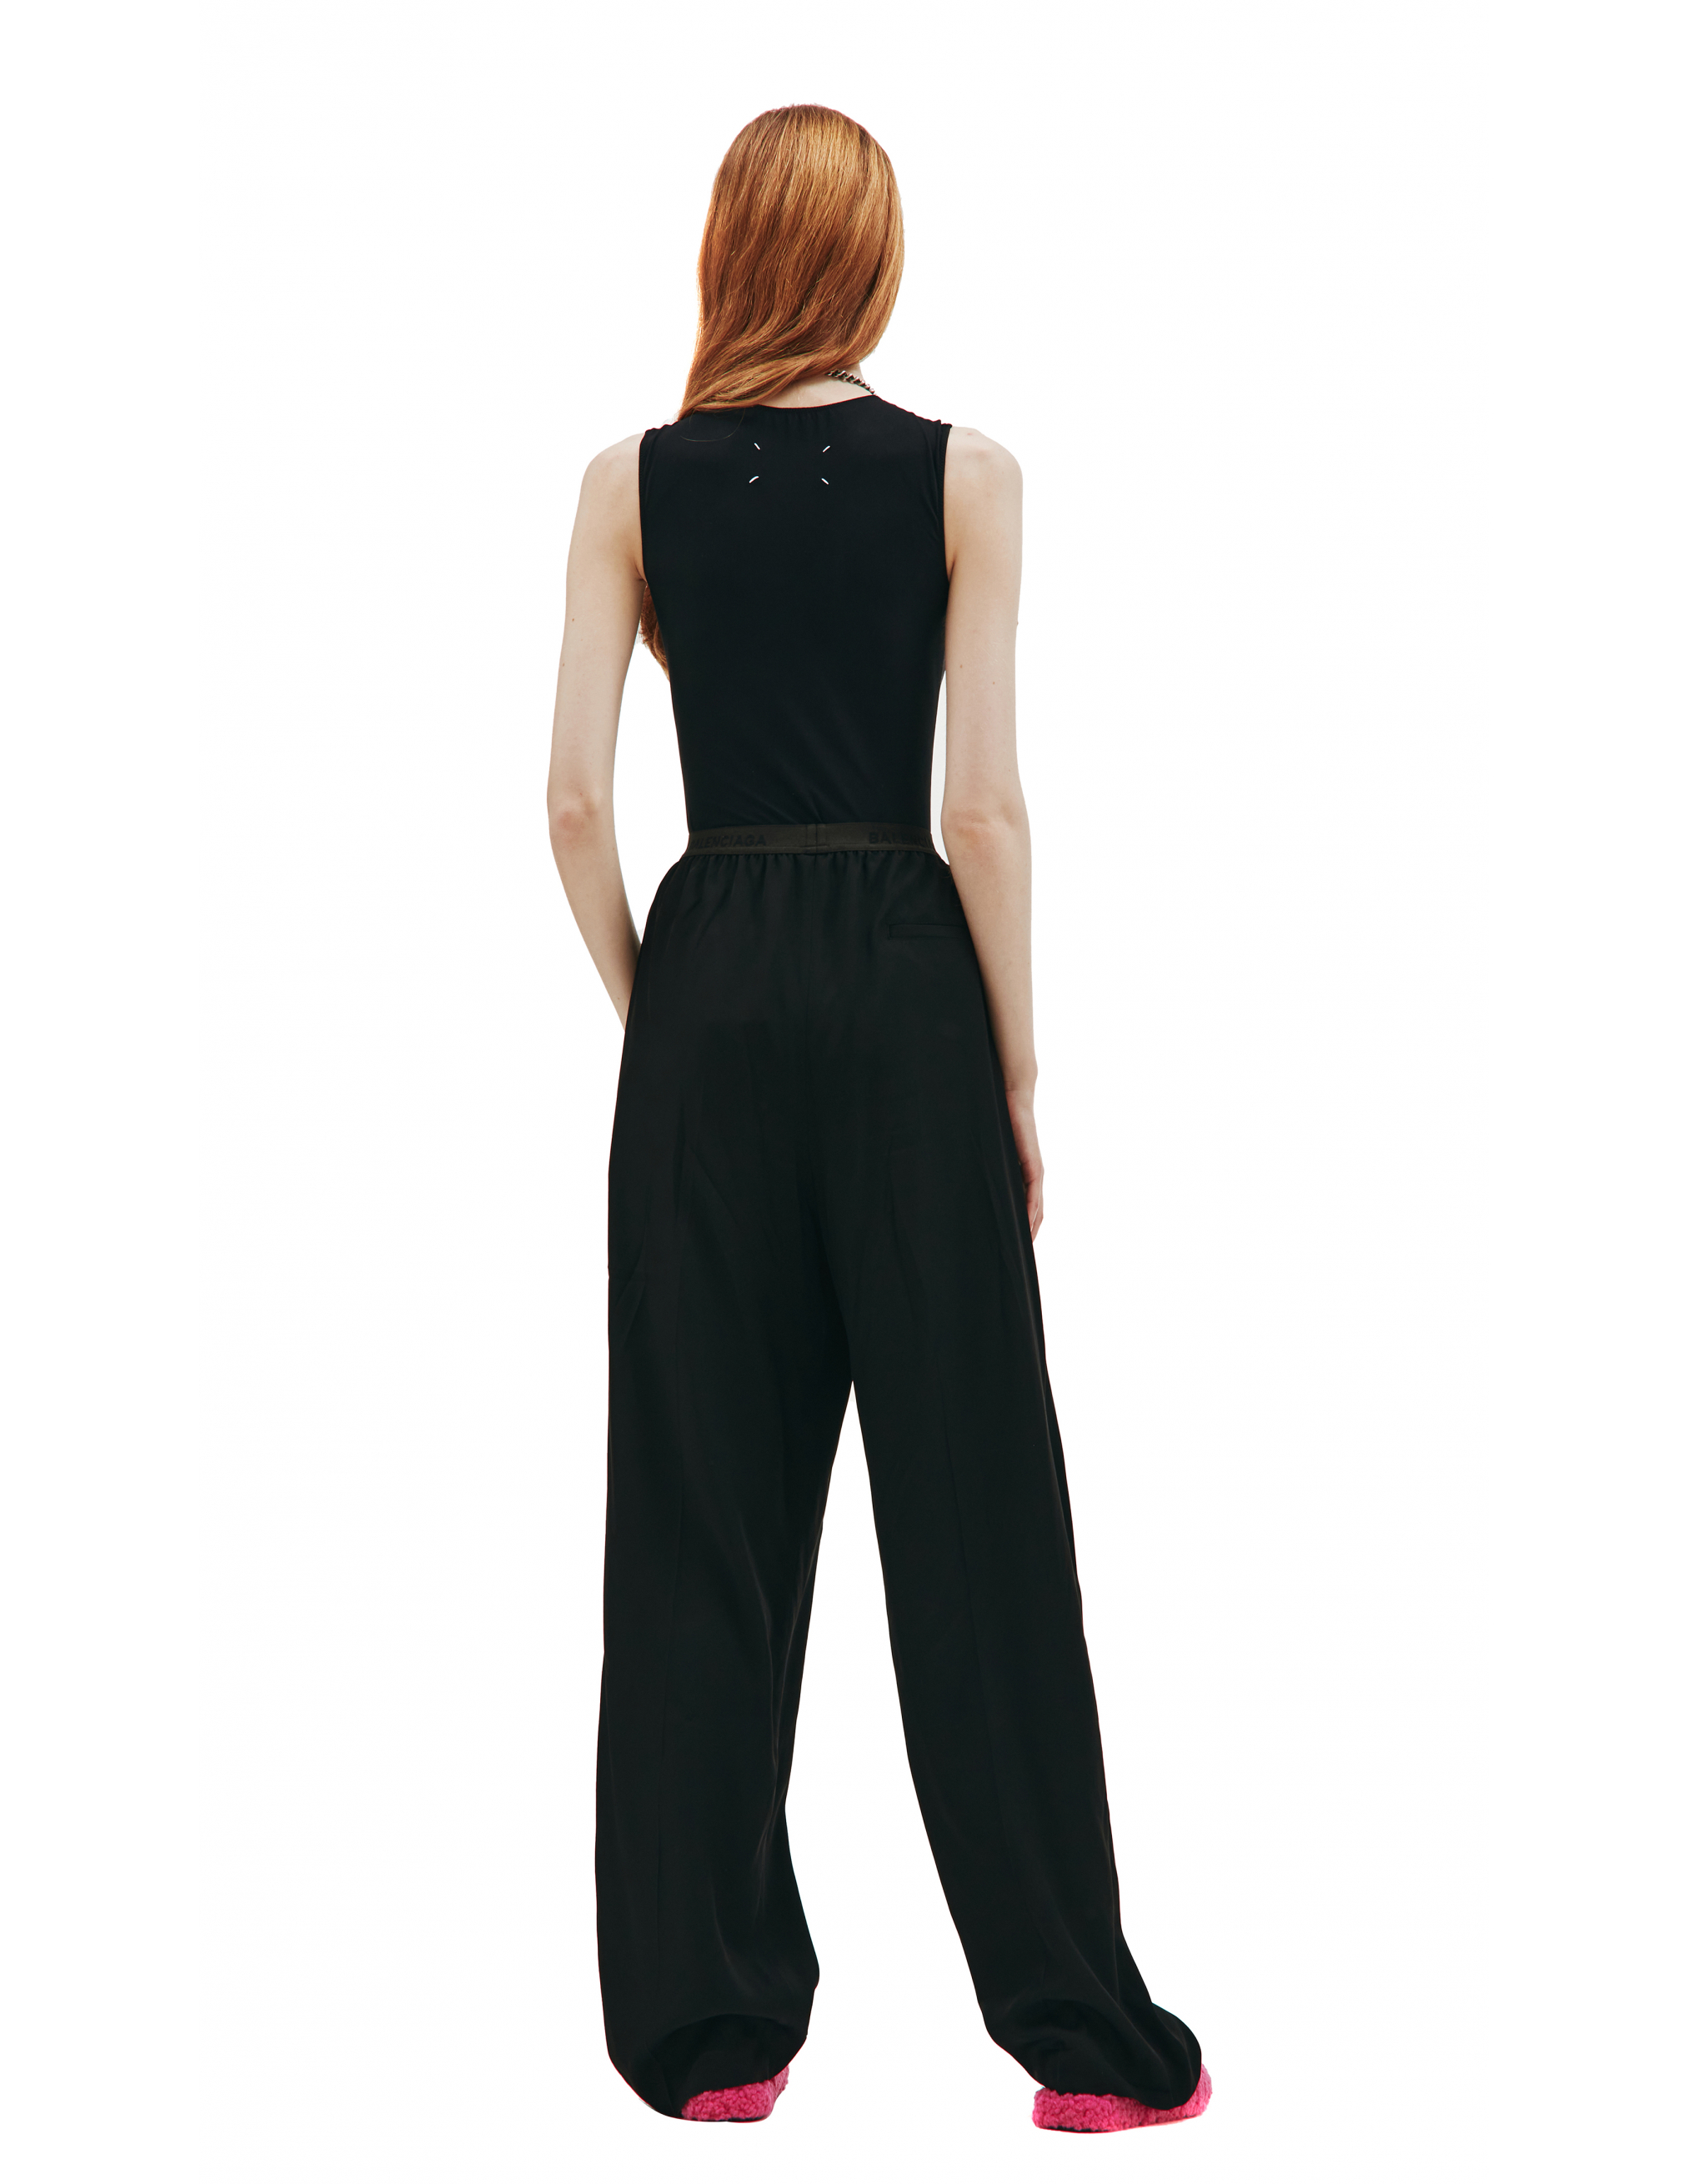 Широкие брюки на резинке с логотипом Balenciaga 675482/TJO25/1000, размер 40;38;36 675482/TJO25/1000 - фото 4